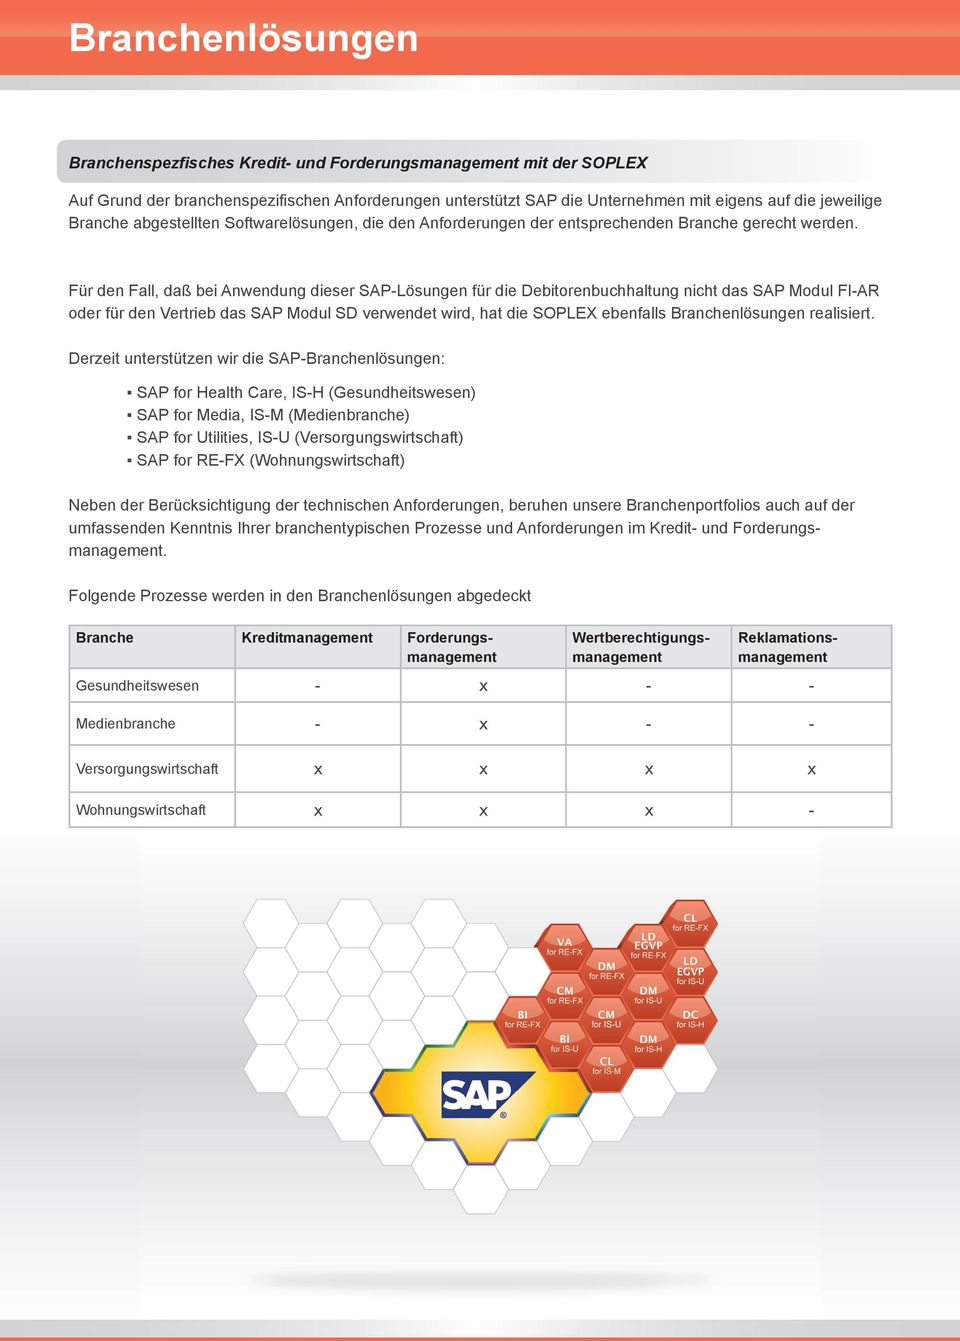 Für den Fall, daß bei Anwendung dieser SAP-Lösungen für die Debitorenbuchhaltung nicht das SAP Modul FI-AR oder für den Vertrieb das SAP Modul SD verwendet wird, hat die SOPLEX ebenfalls